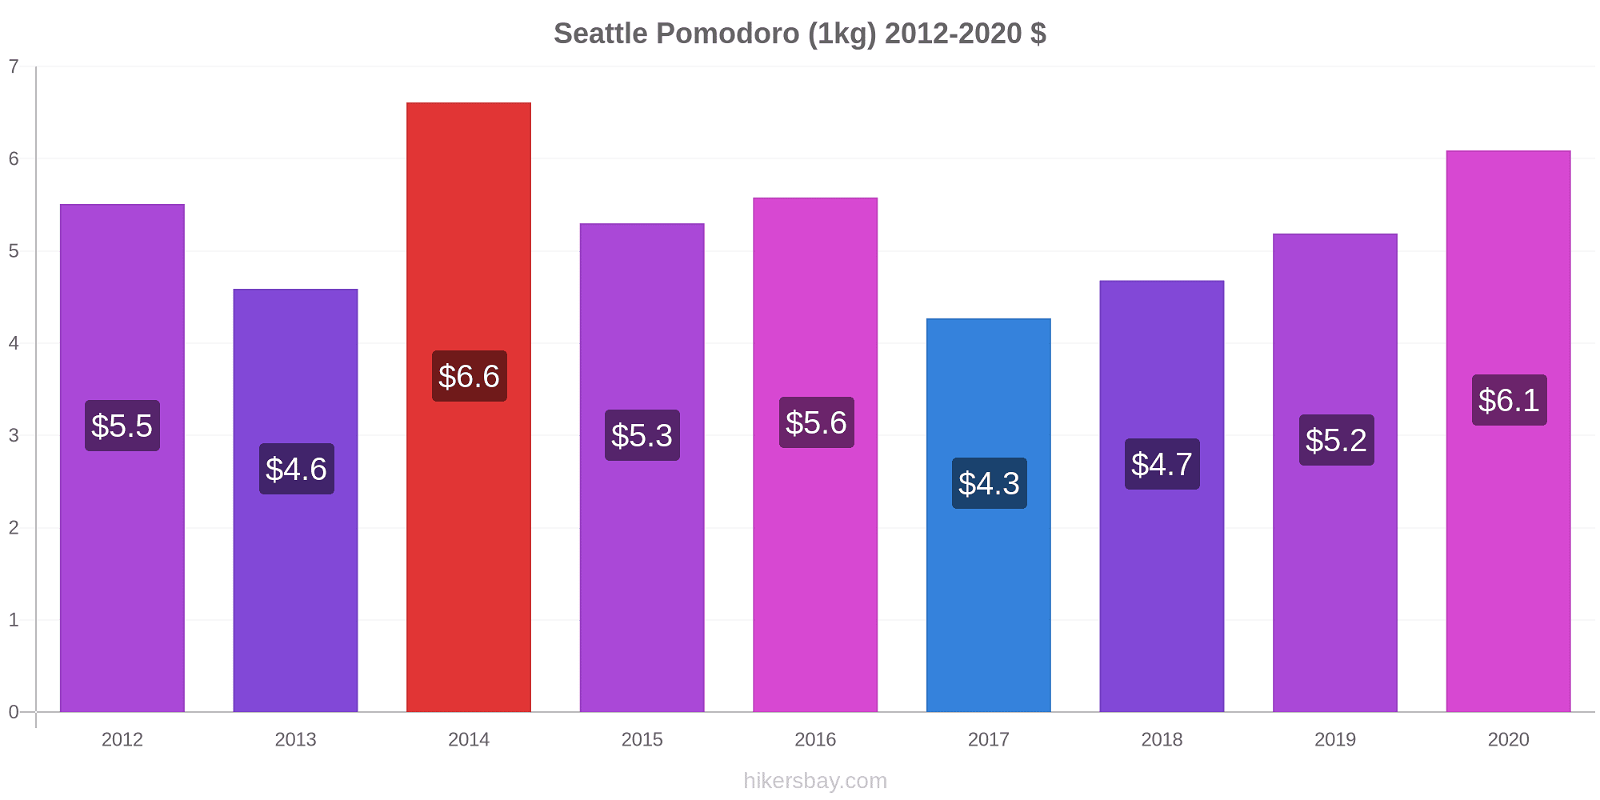 Seattle variazioni di prezzo Pomodoro (1kg) hikersbay.com